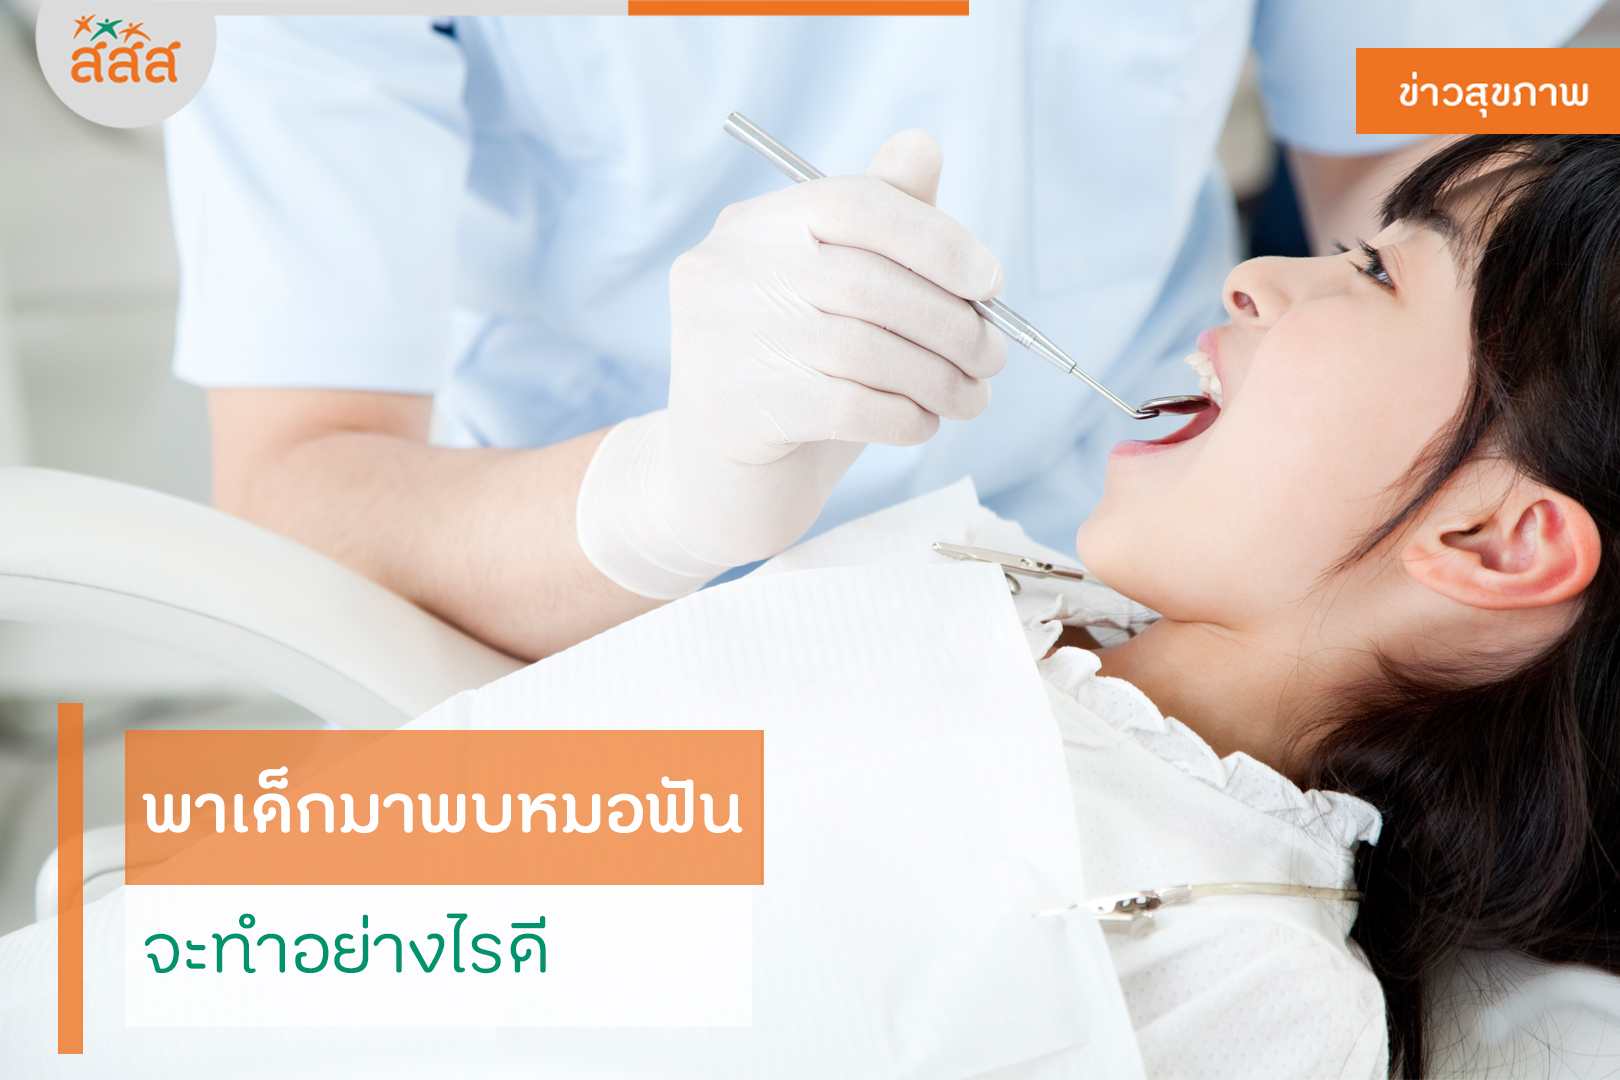 พาเด็กมาพบหมอฟัน จะทำอย่างไรดี thaihealth